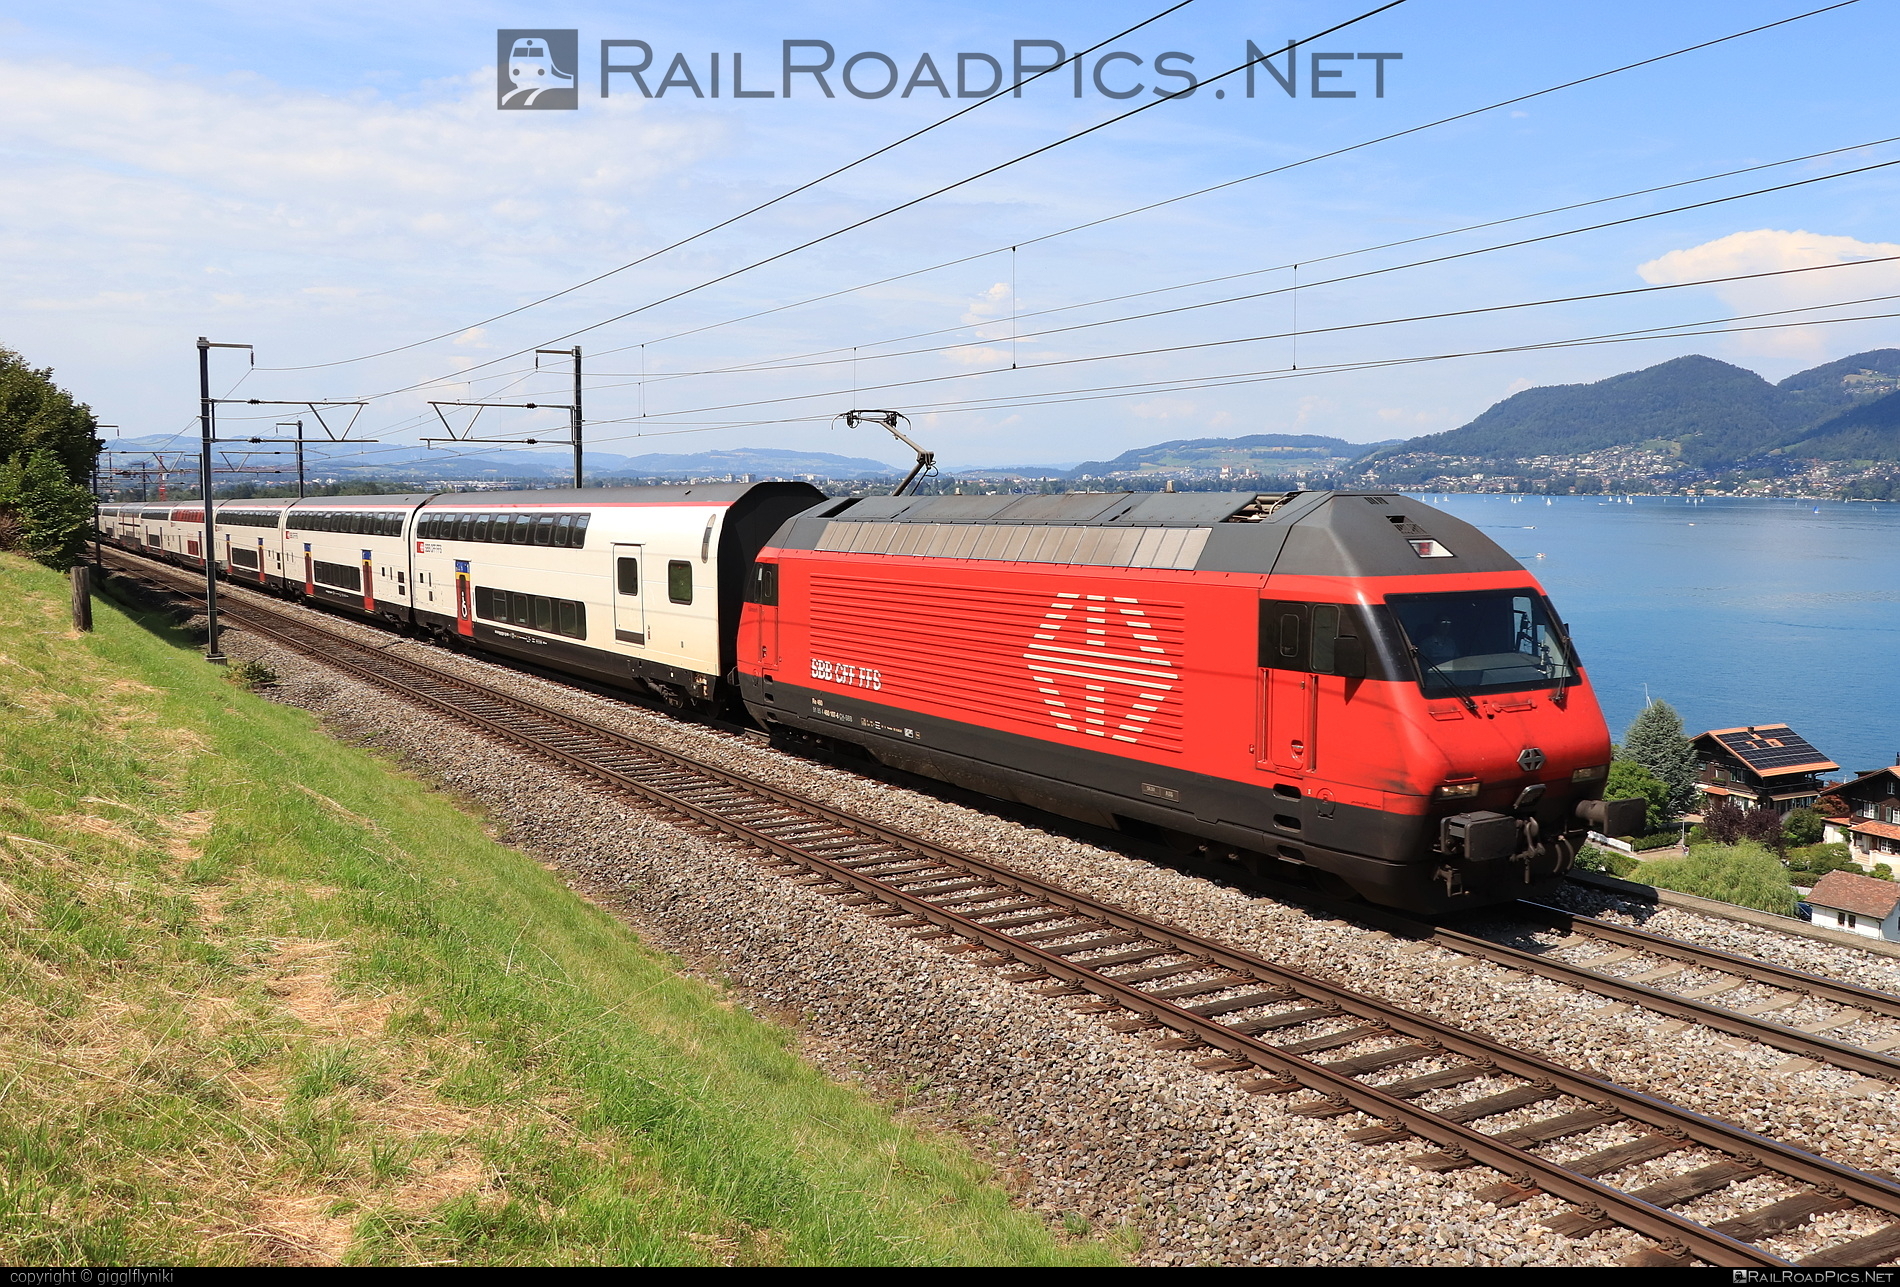 SBB Class Re 460 - 460 107 operated by Schweizerische Bundesbahnen SBB #CFF #CheminsDeFerFederauxSuisses #FFS #FerrovieFederaliSvizzere #SBB #SchweizerischeBundesbahnen #lok2000 #sbbClassRe460 #sbbRe460